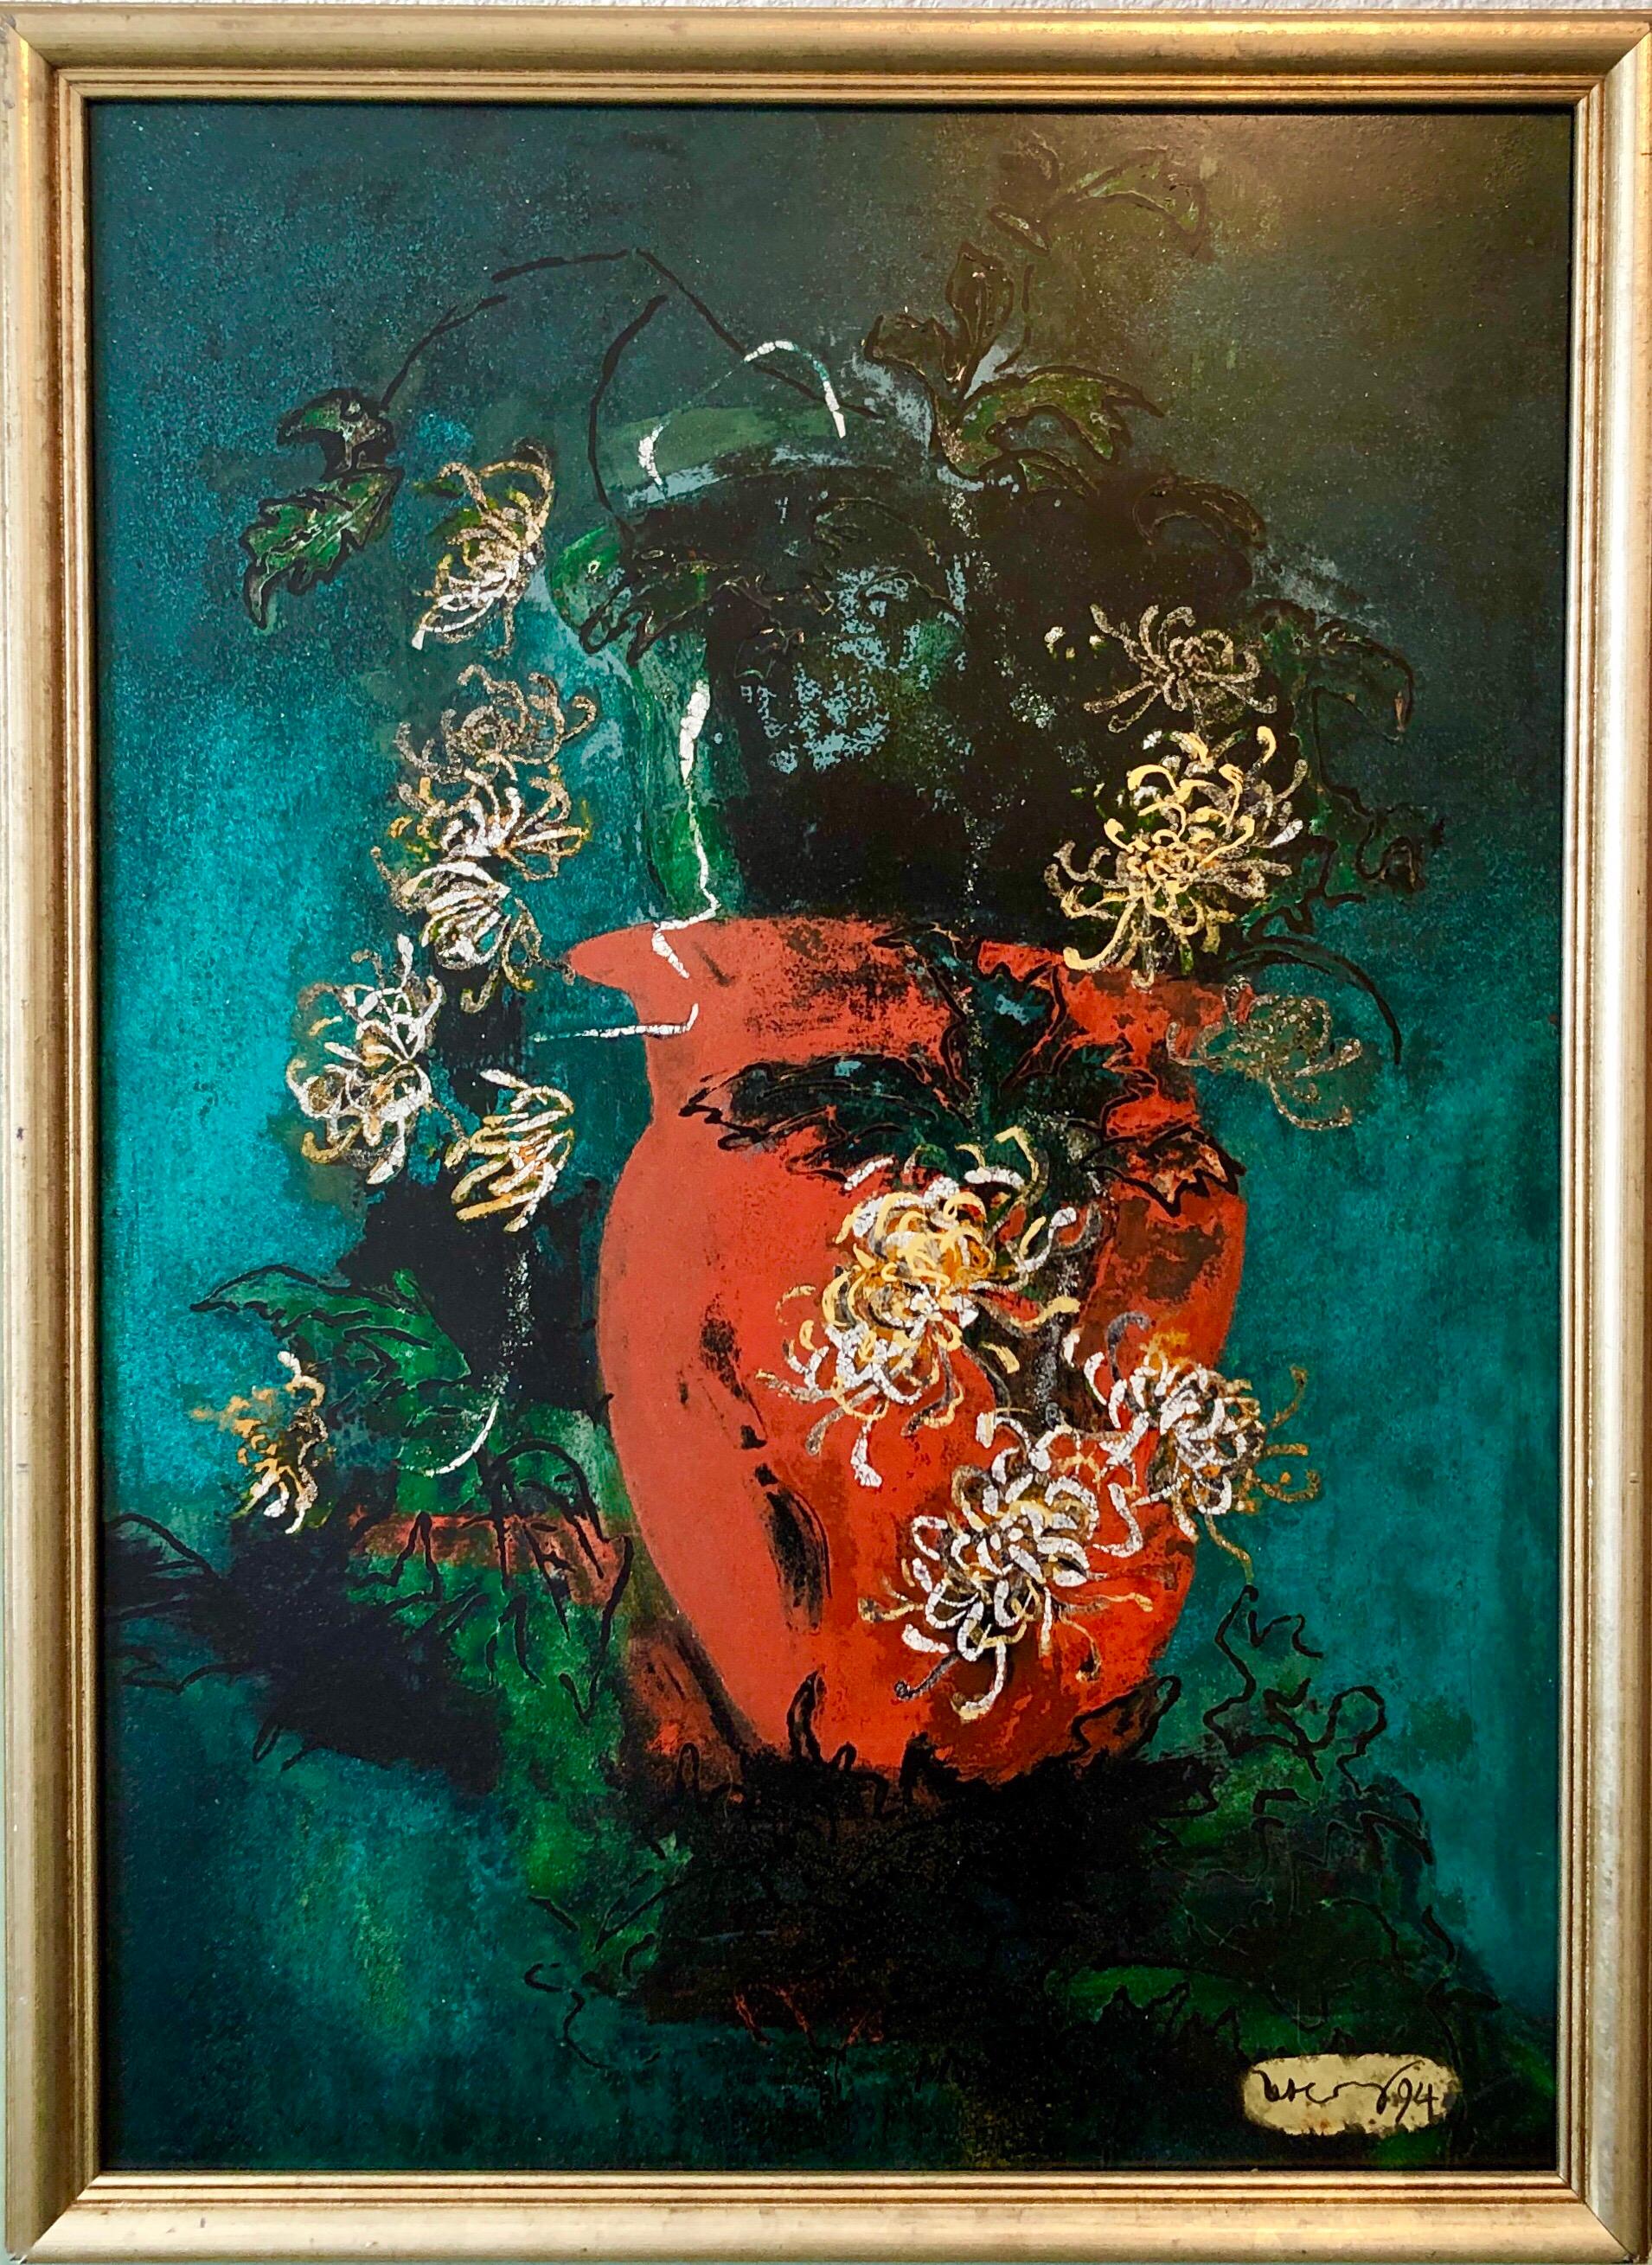 Abstract Painting Unknown - Peinture à l'huile Pop Art émaillée aux couleurs vives et vibrantes - Fleurs - Expressionniste abstrait new-yorkais